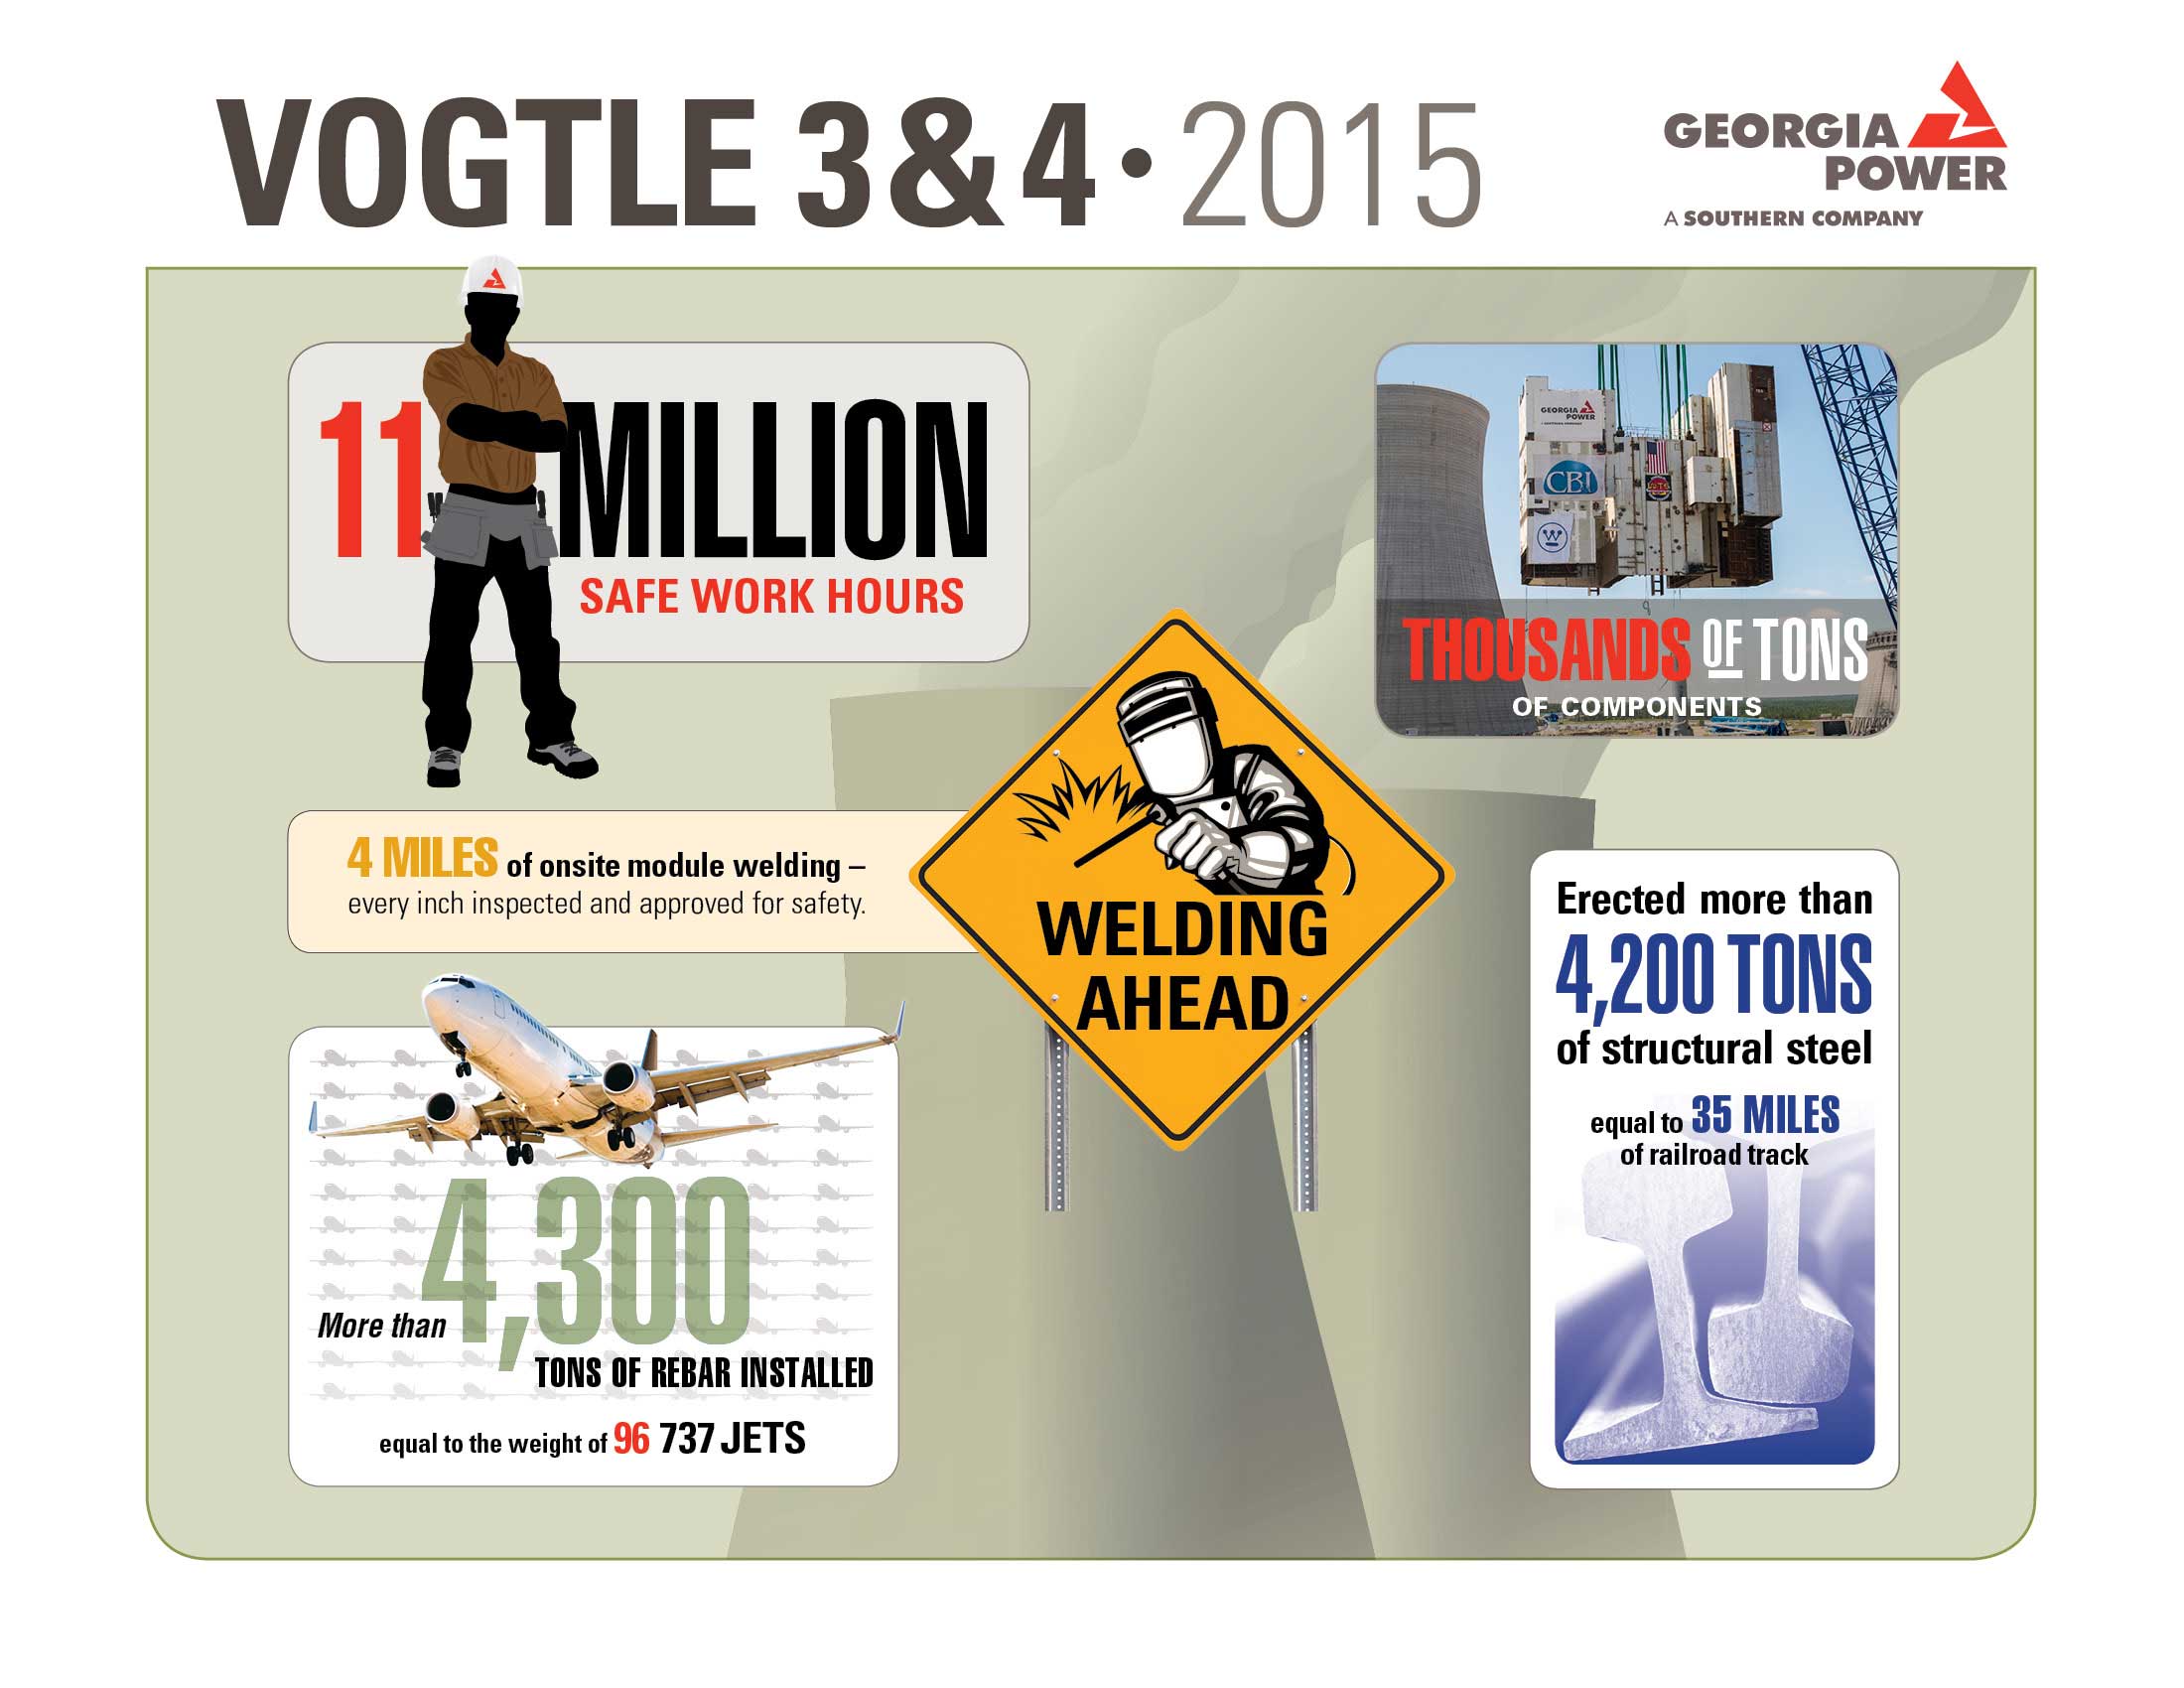 Vogtle 3 & 4 2015 Milestone Infographic